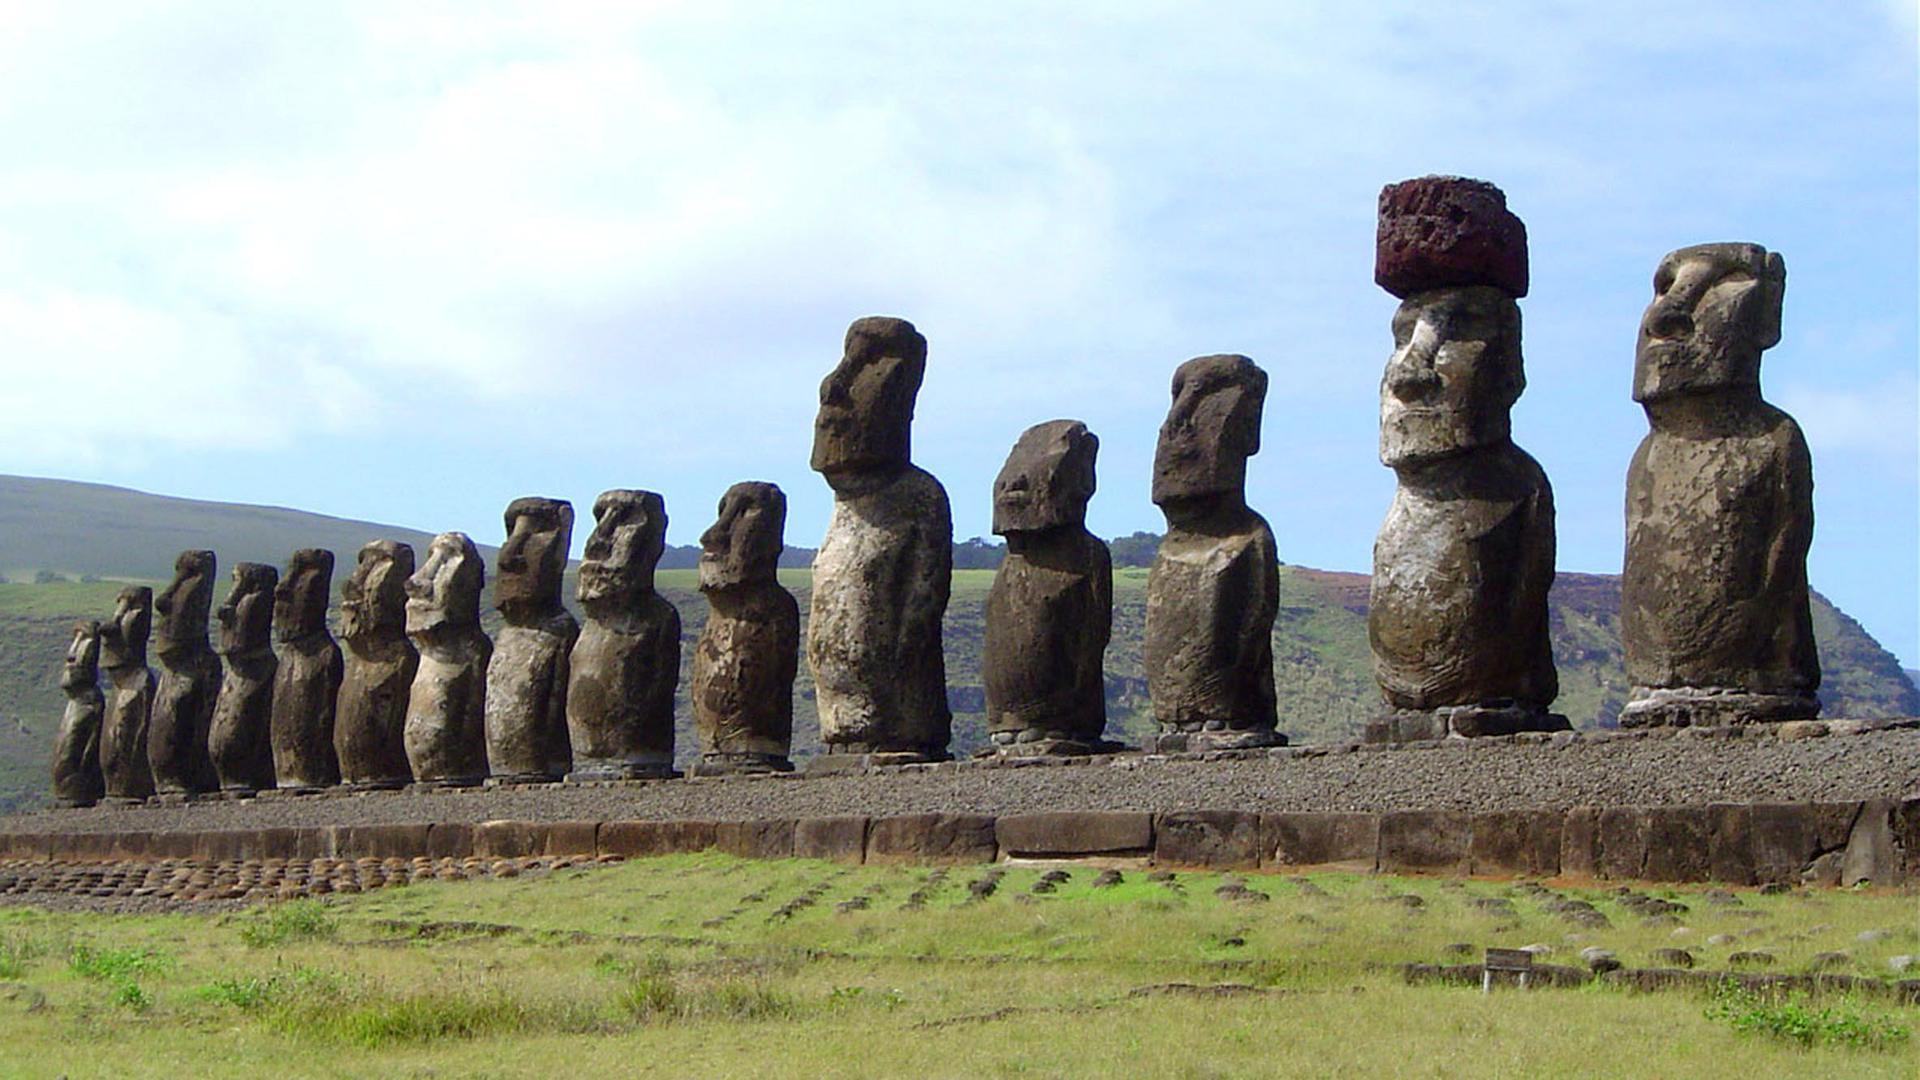 Moai-Statuen auf der Osterinsel